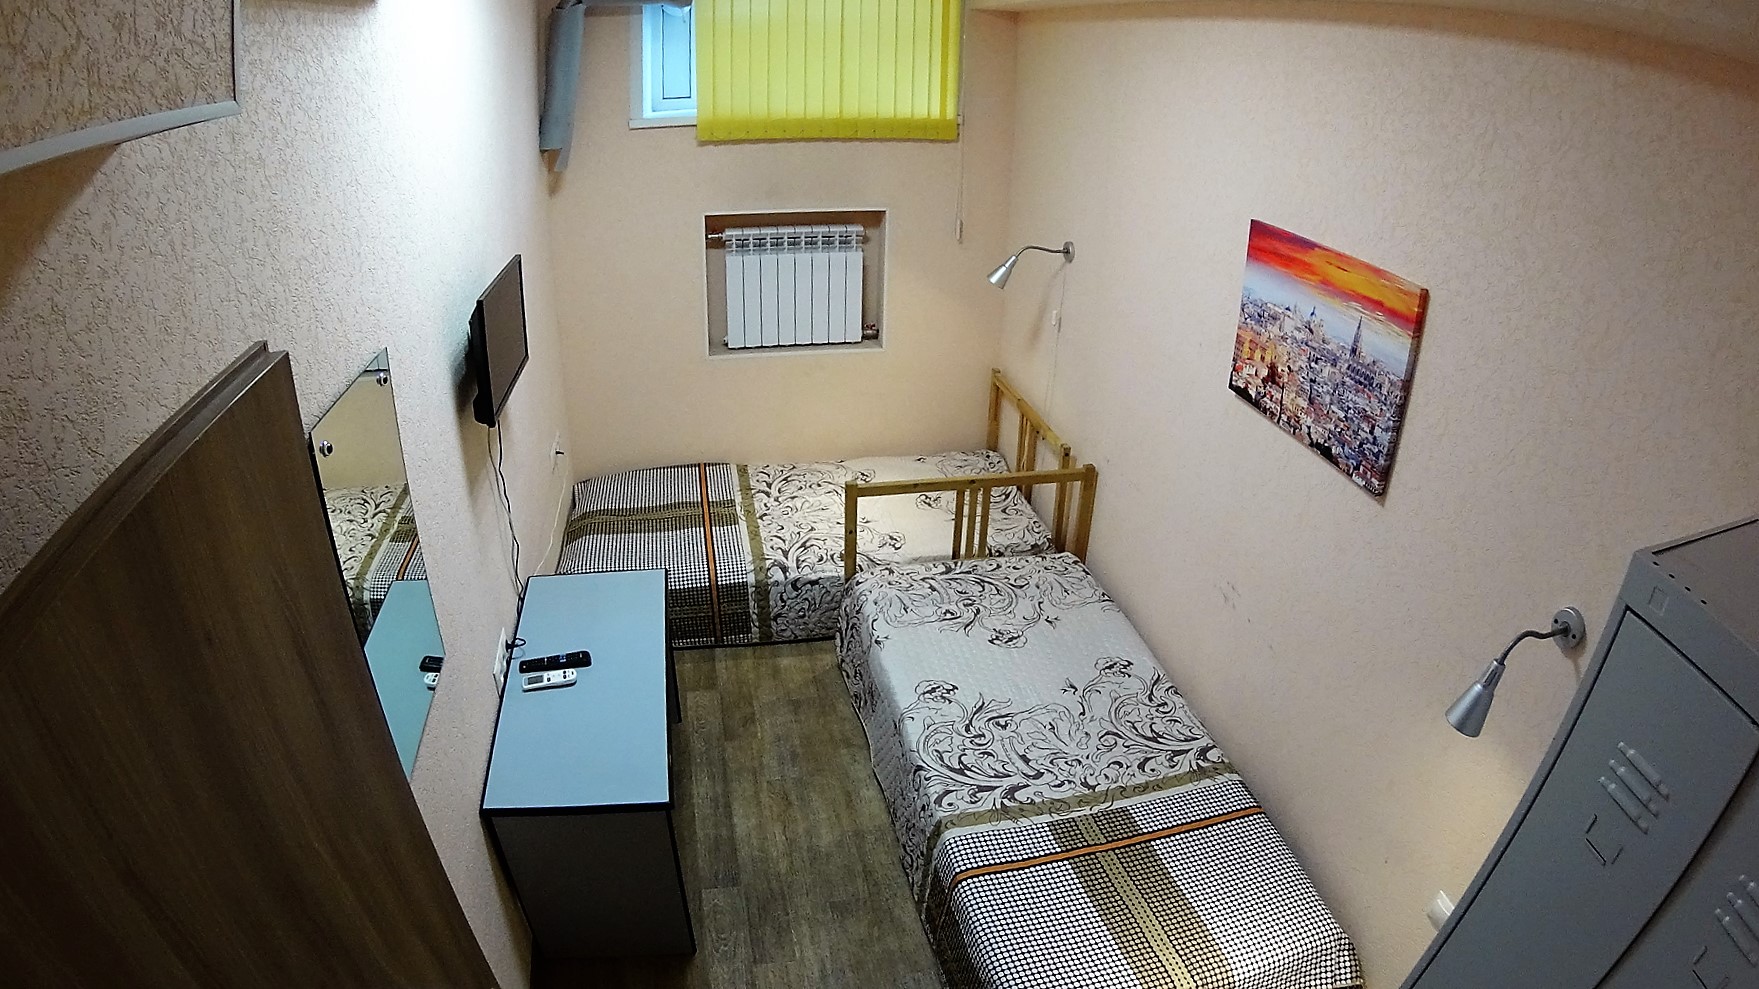 Номера комнат в общежитии. Комната в общежитии. Хостел одноместный номер. Хостел комната одноместная. Общежитие в Новосибирске.